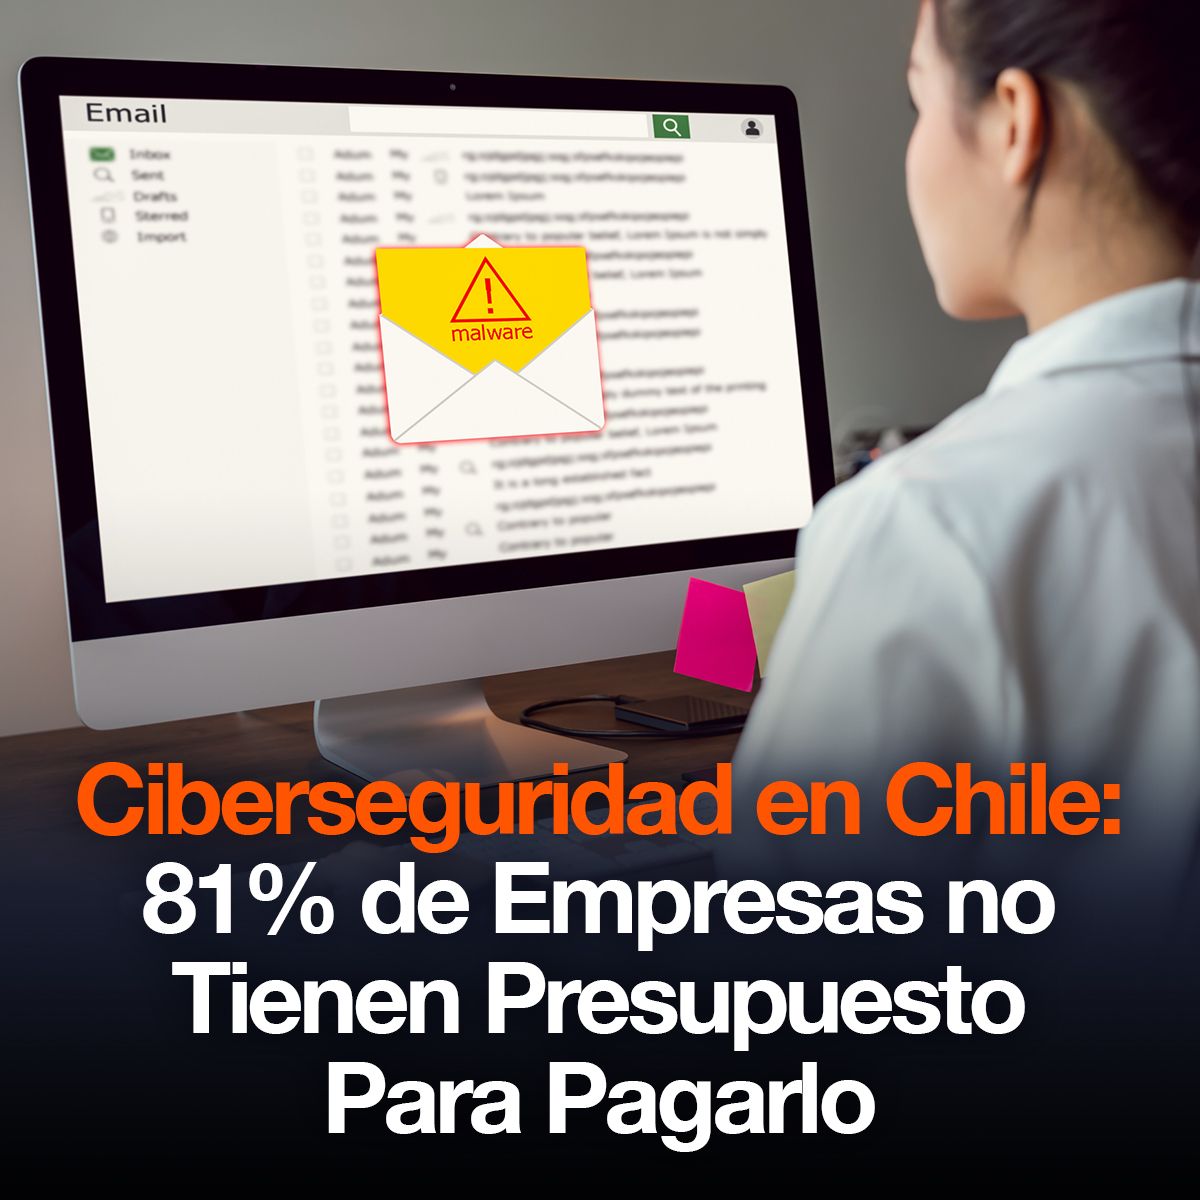 Ciberseguridad en Chile: 81% de Empresas no Tienen Presupuesto Para Pagarlo